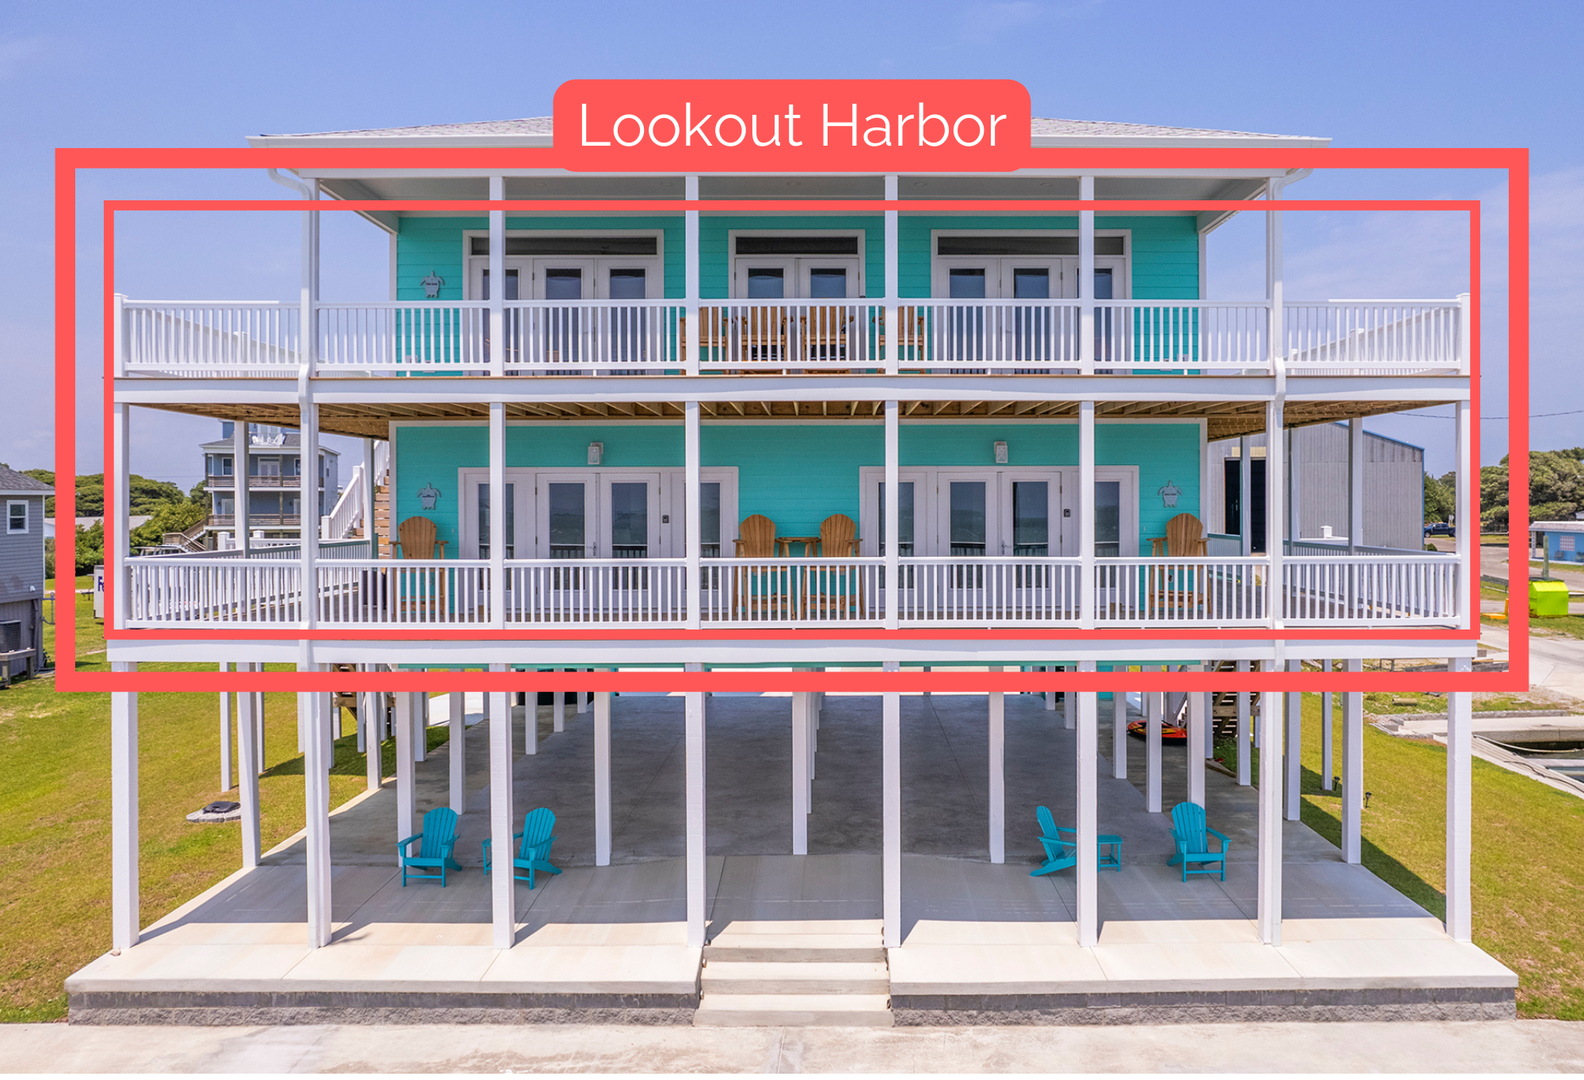 Lookout Harbor